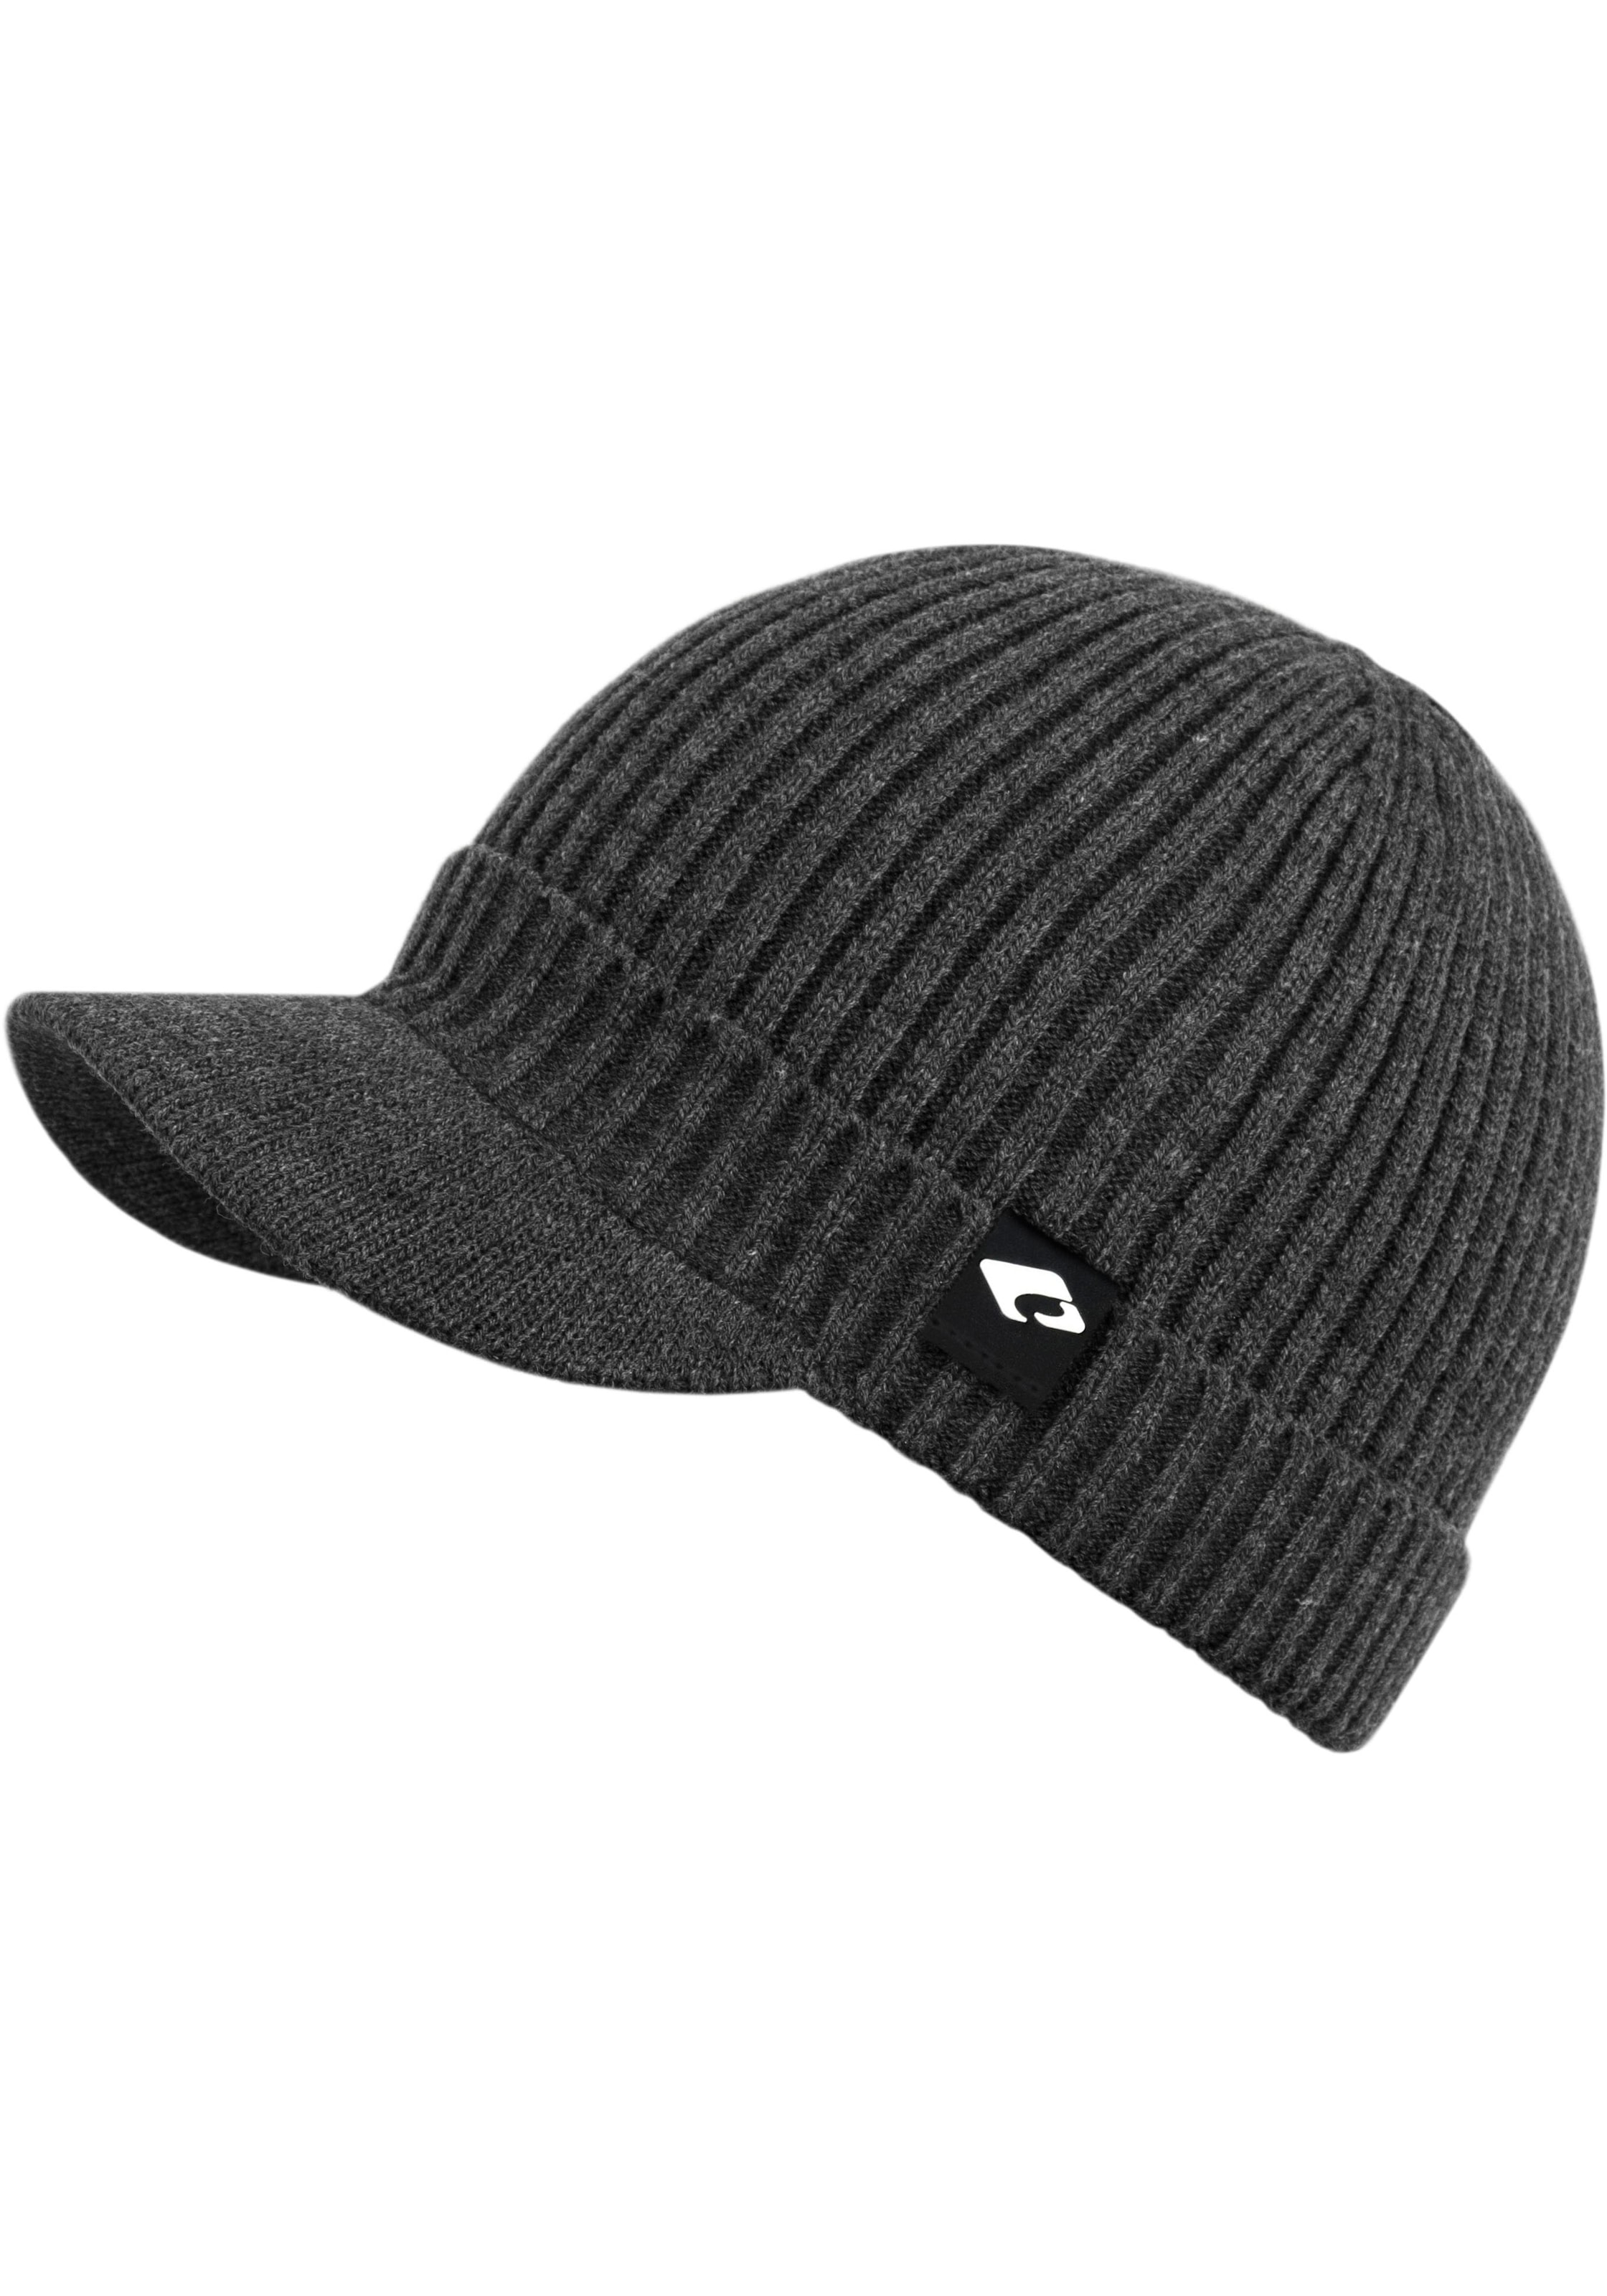 chillouts Strickmütze »Benno Hat«, Benno Hat